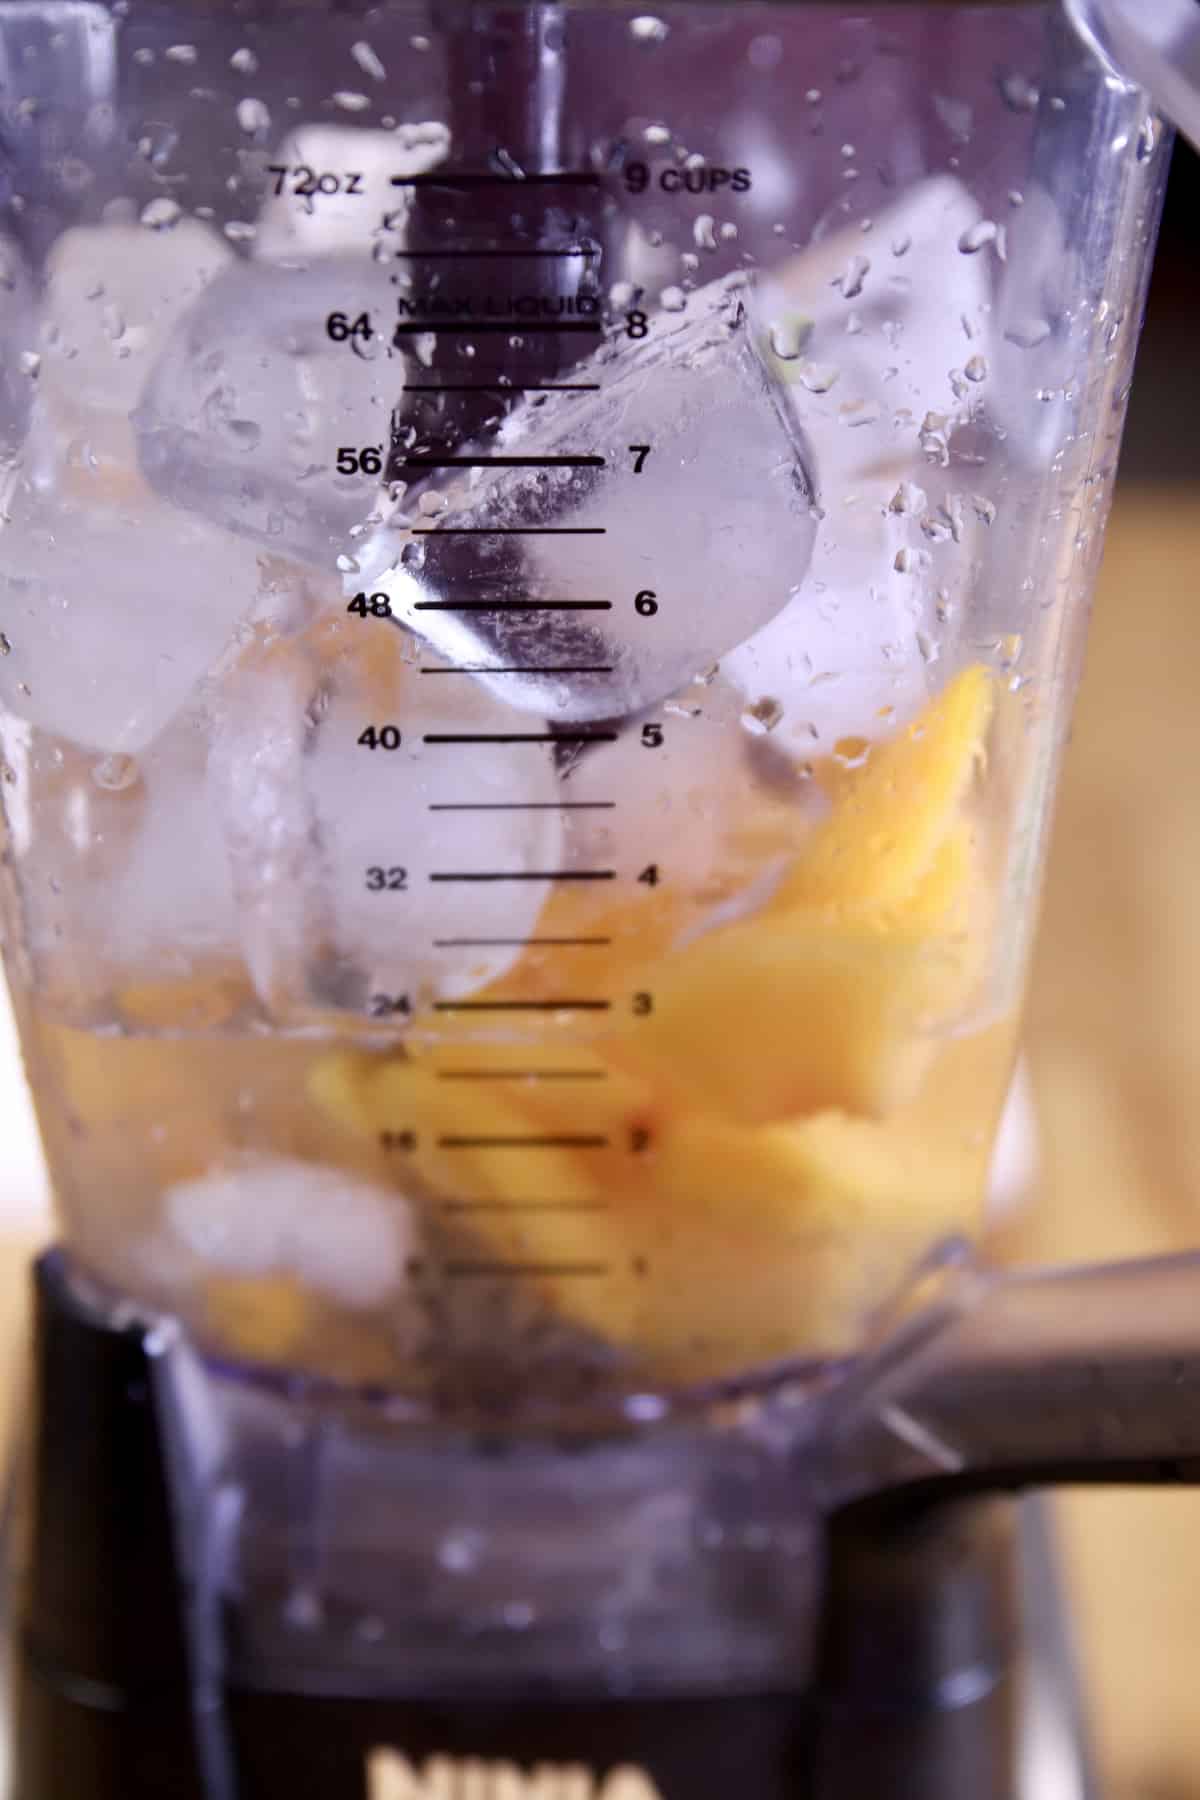 frozen peaches, ice, rum in a blender.